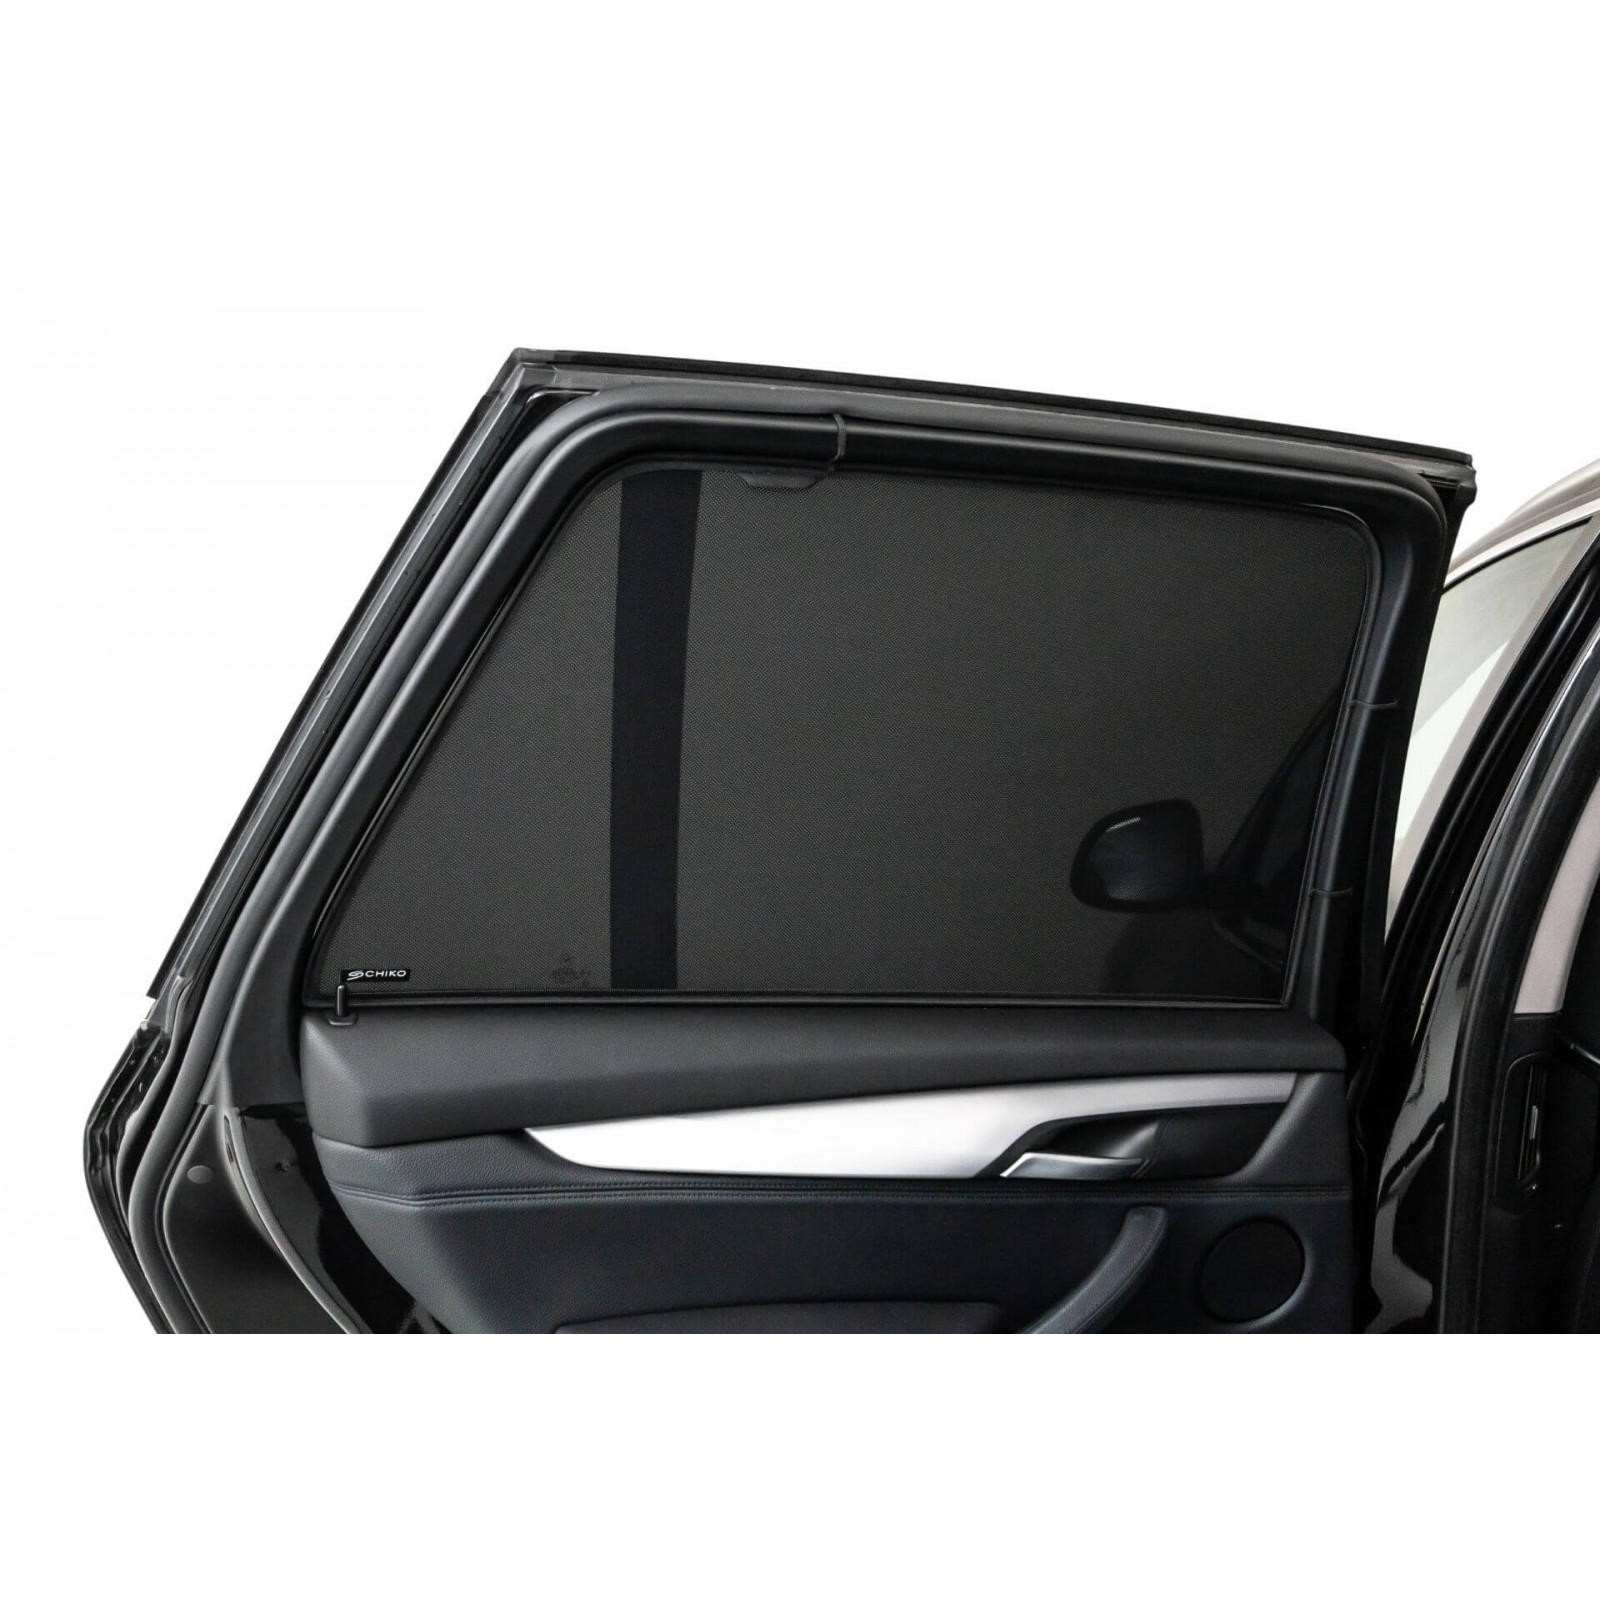 2011-2017 Protezione UV TUTU-C-C Parasole per finestrini Auto F25 6 Pezzi per BMW X3 